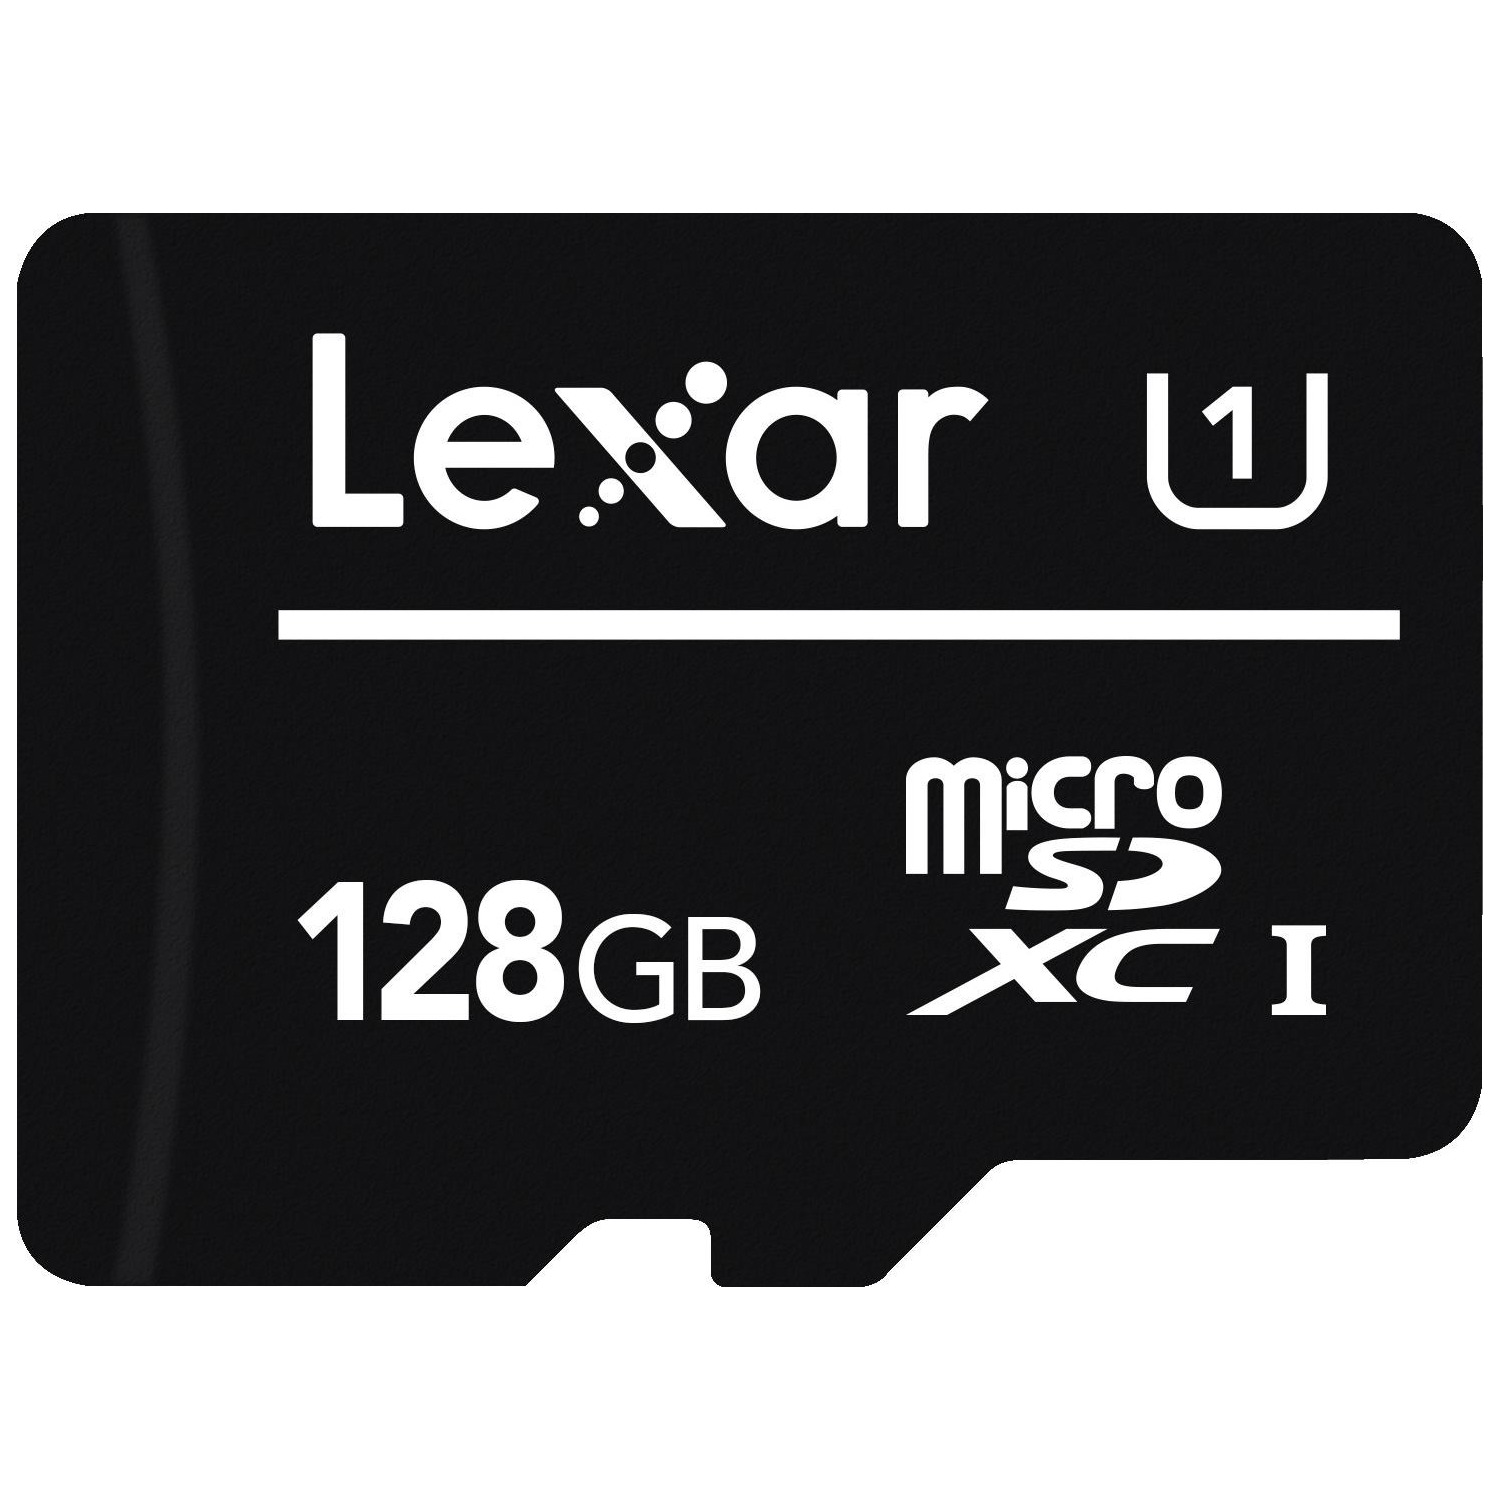 Immagine per MicroSD Lexar 128GB classe 10 senza adattatore da DIMOStore